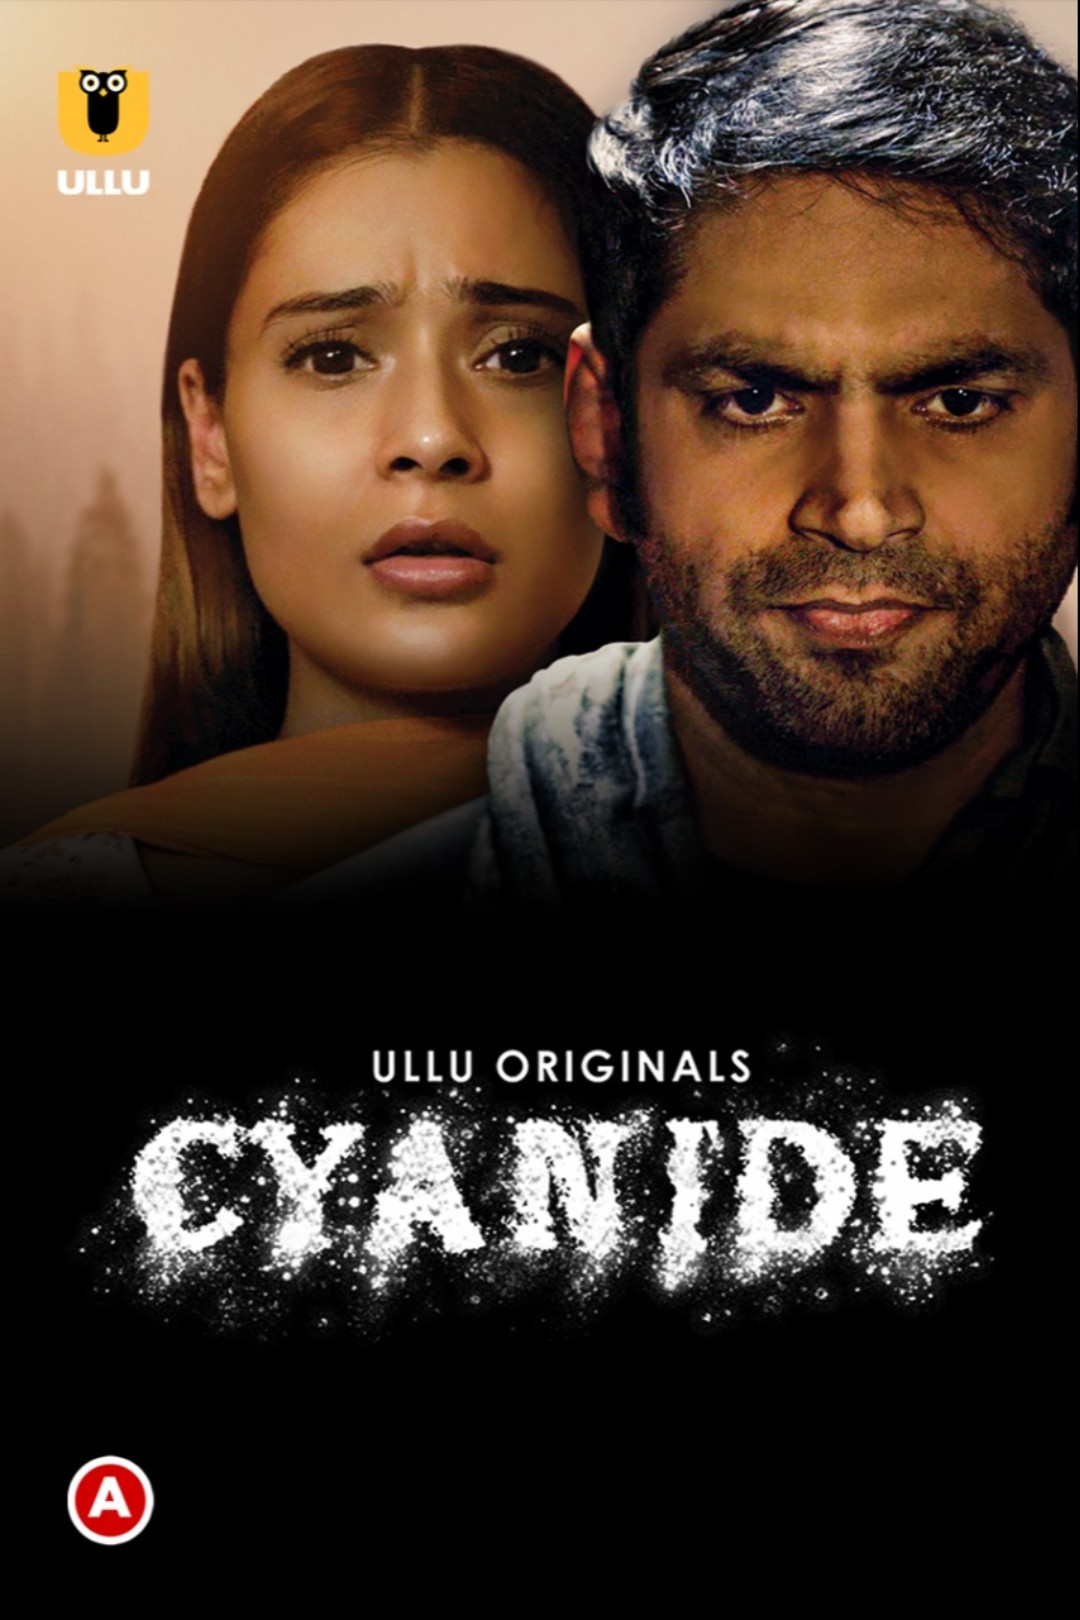 Download Cyanide 2021 S01 Ullu Originals web Series 480p 720p